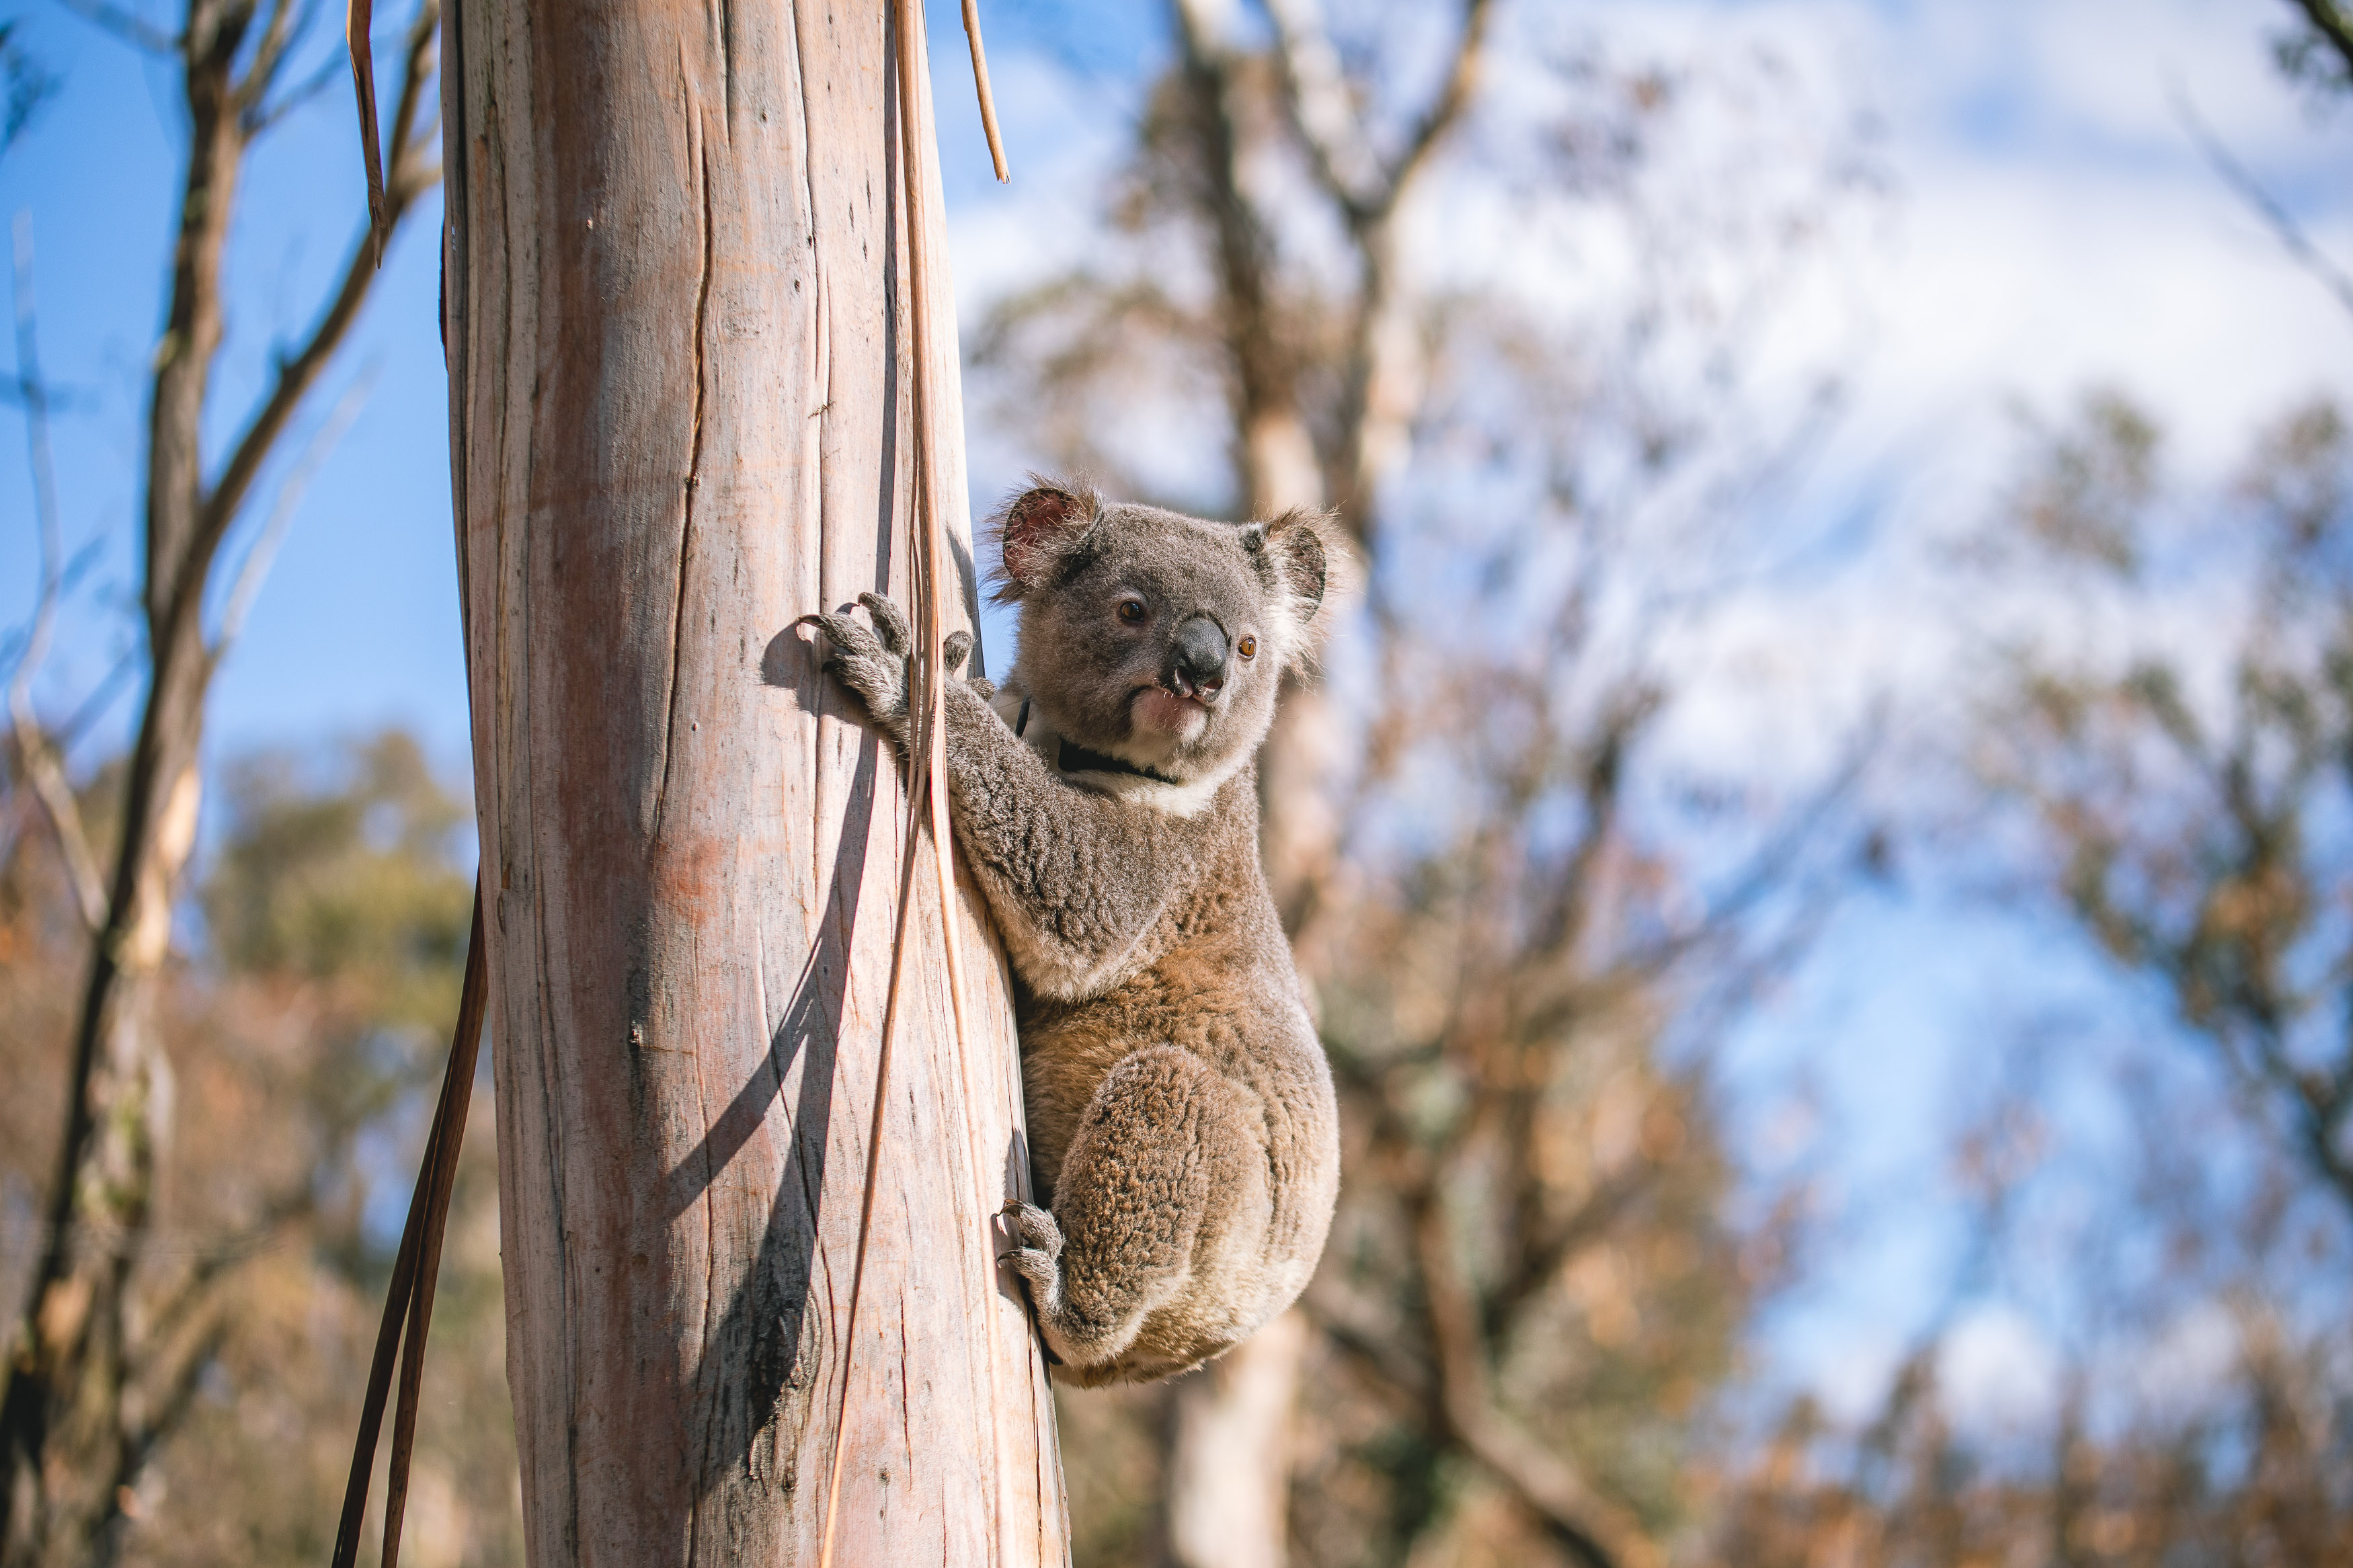 A koala release